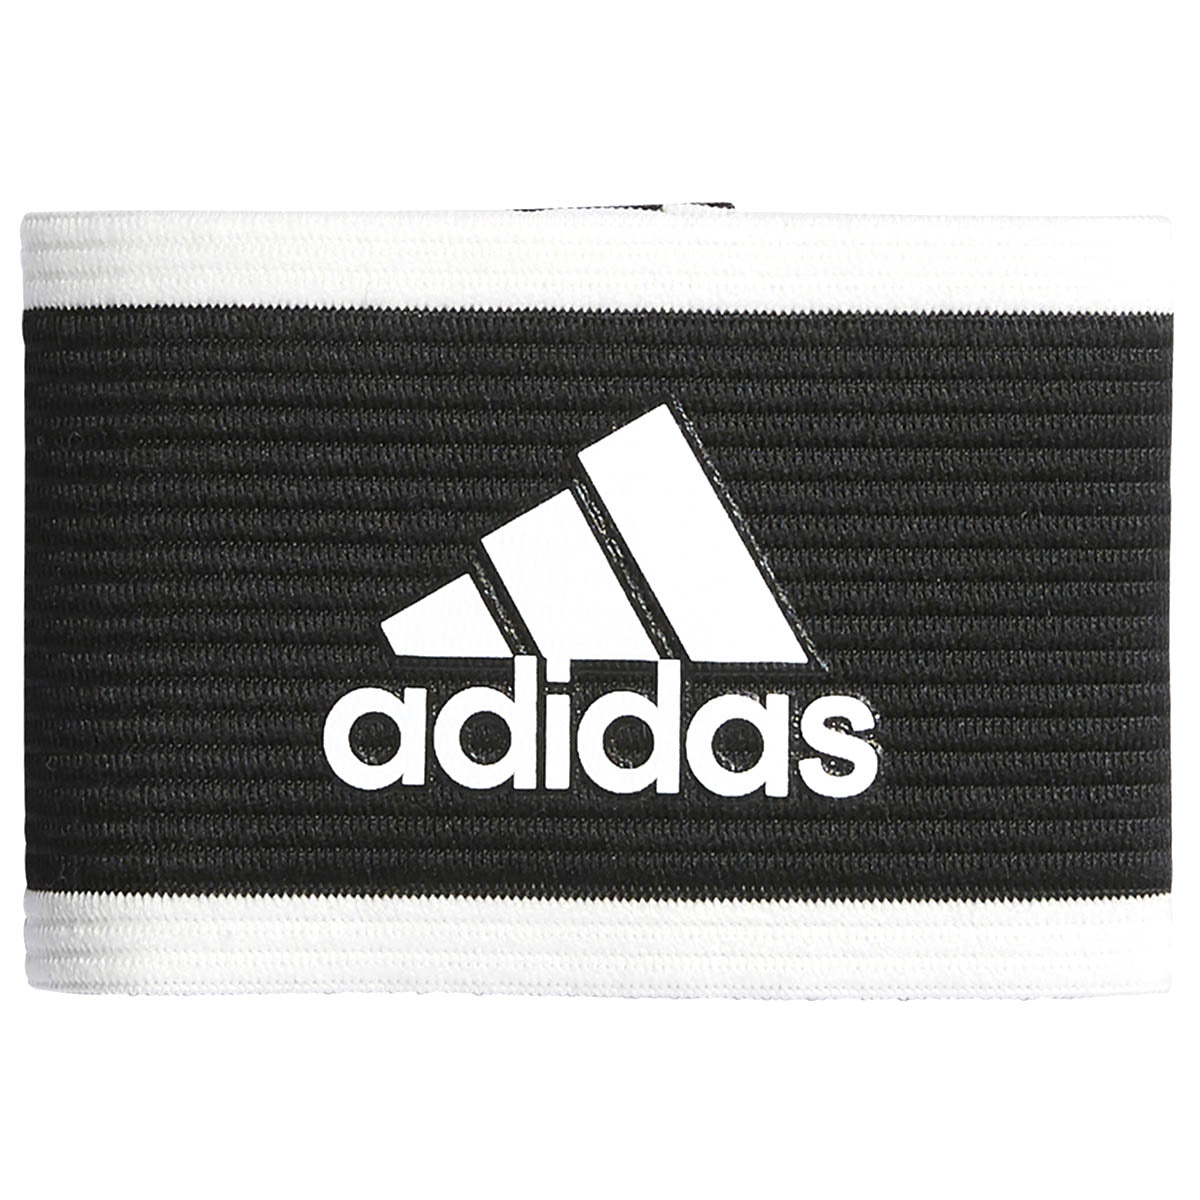 adidas Captains Armband | 5126296 Captains Armbands Adidas OSFA Black/White 